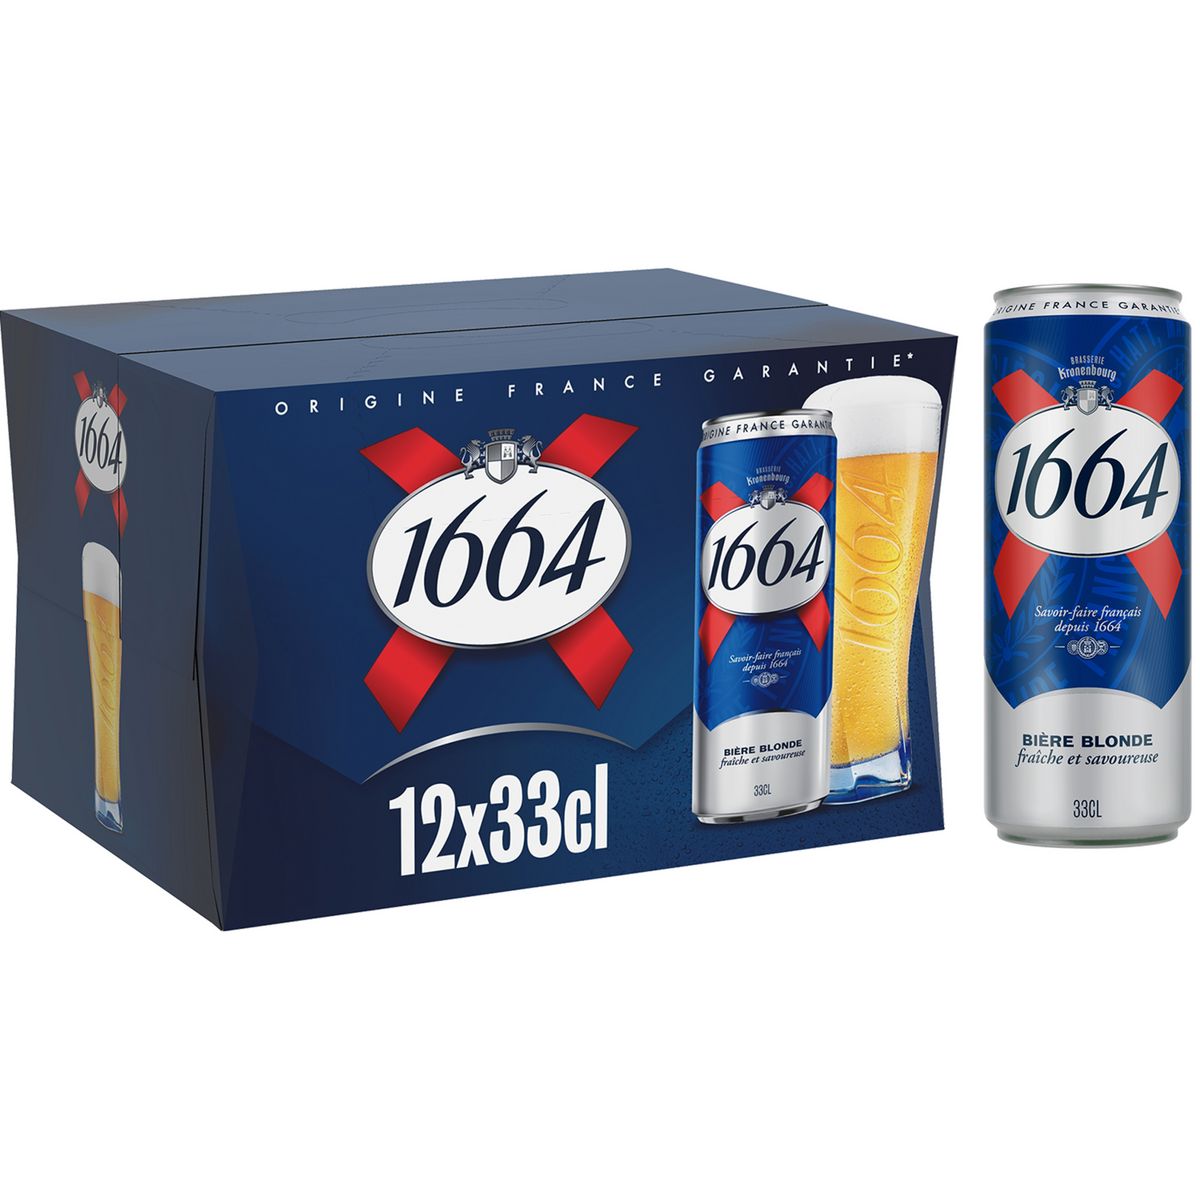 1664 Bière blonde 5.5% boîtes 12x33cl